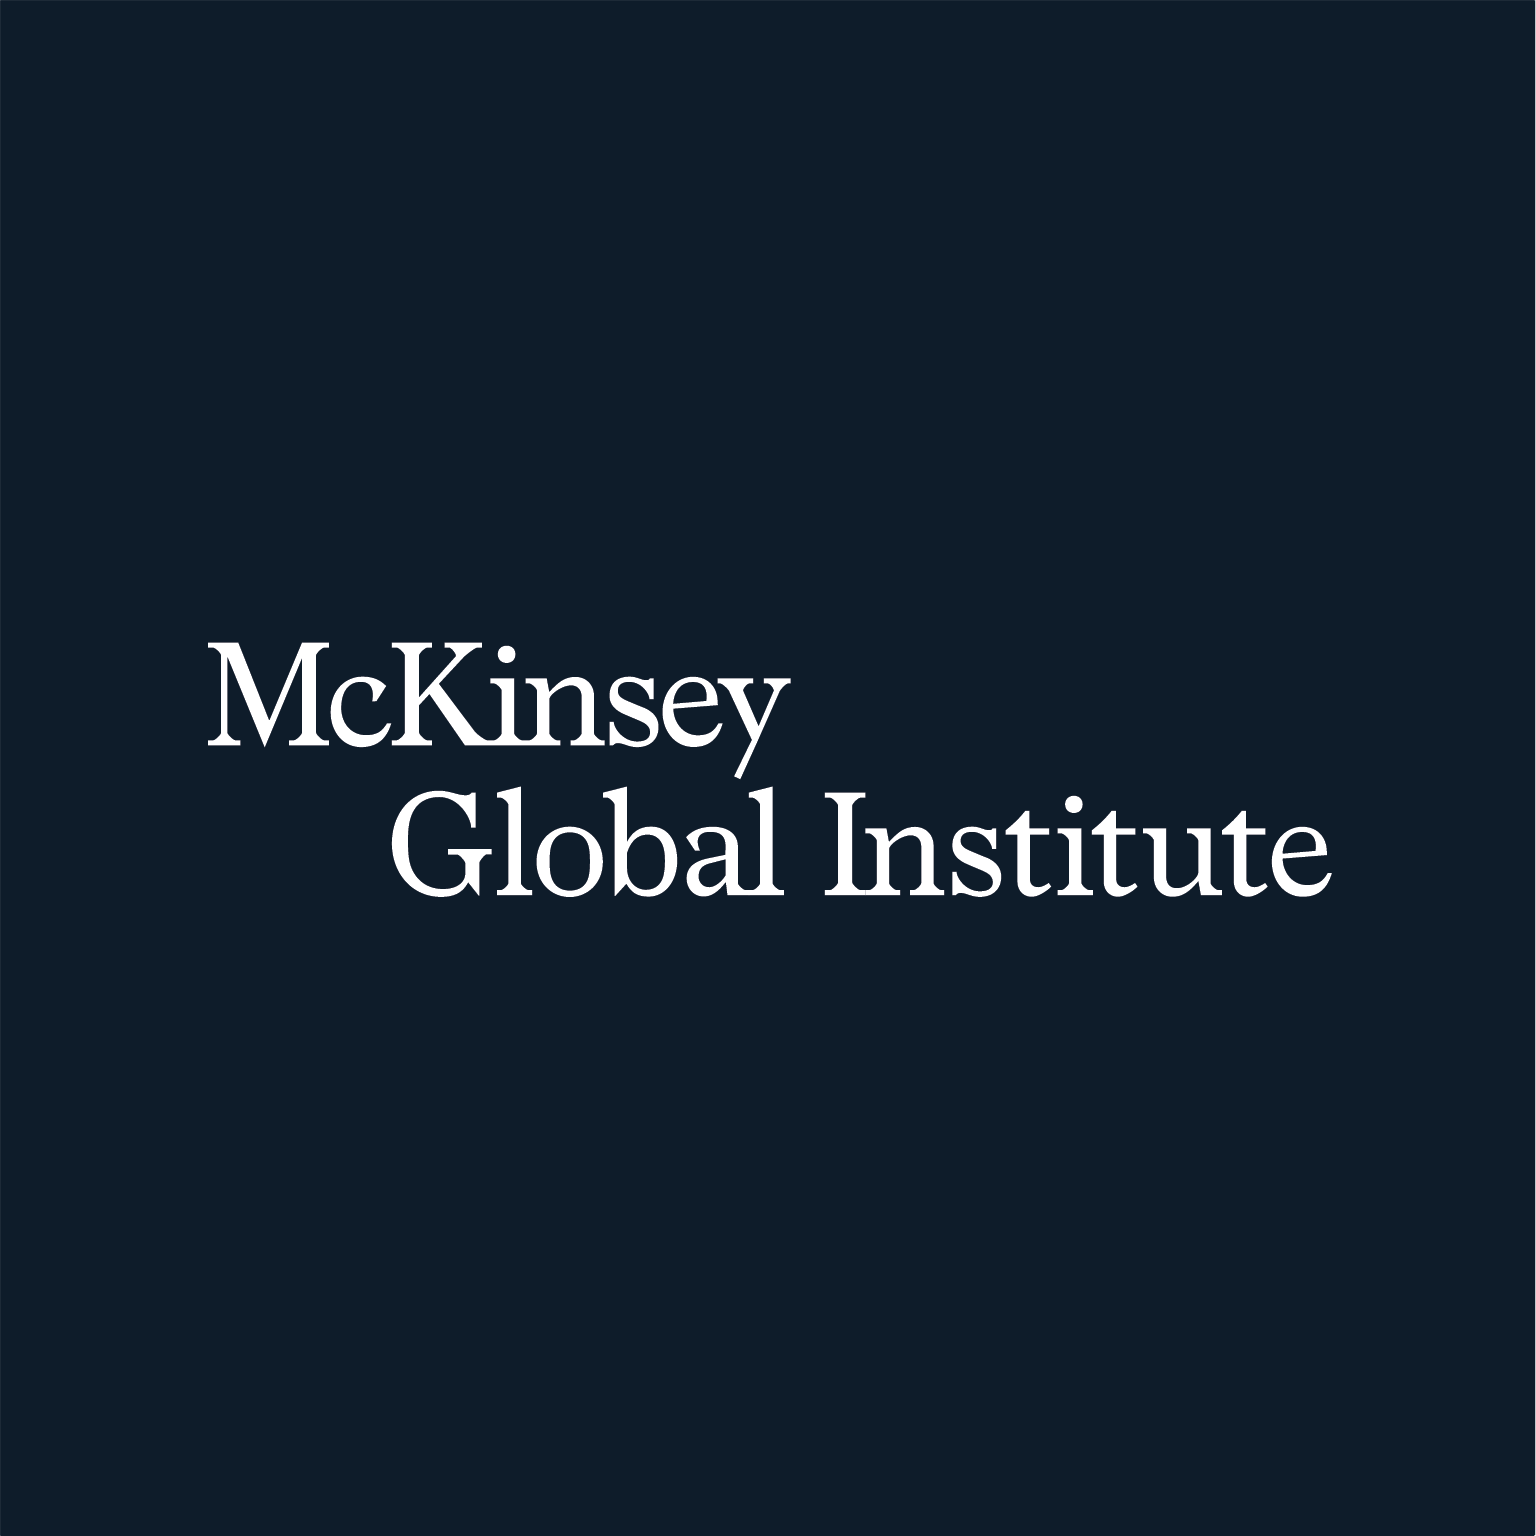 You are currently viewing “Efeitos do vírus podem reduzir a quantidade de empregos com salários reduzidos”, alerta McKinsey